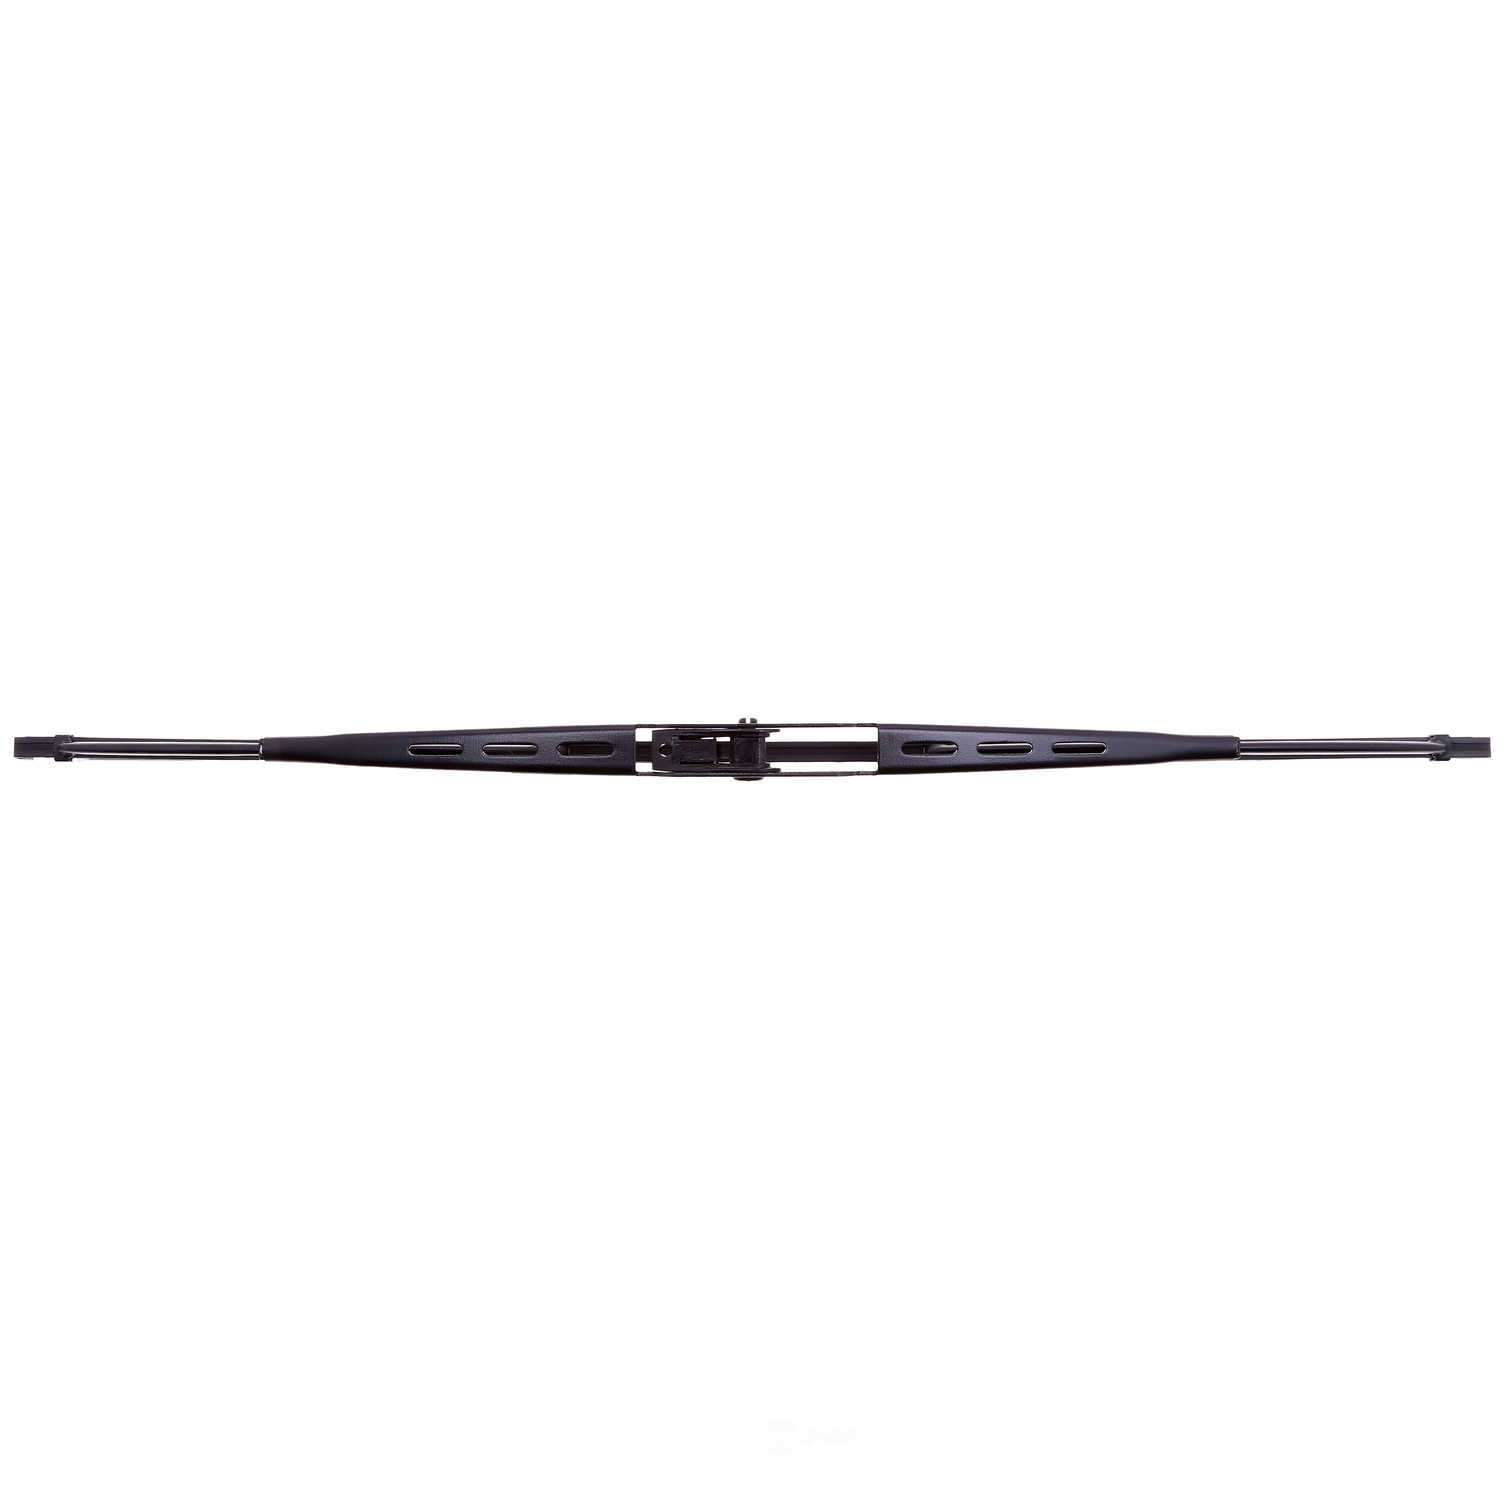 ANCO WIPER PRODUCTS - ANCO 14-Series Wiper Blade - ANC 14C-16